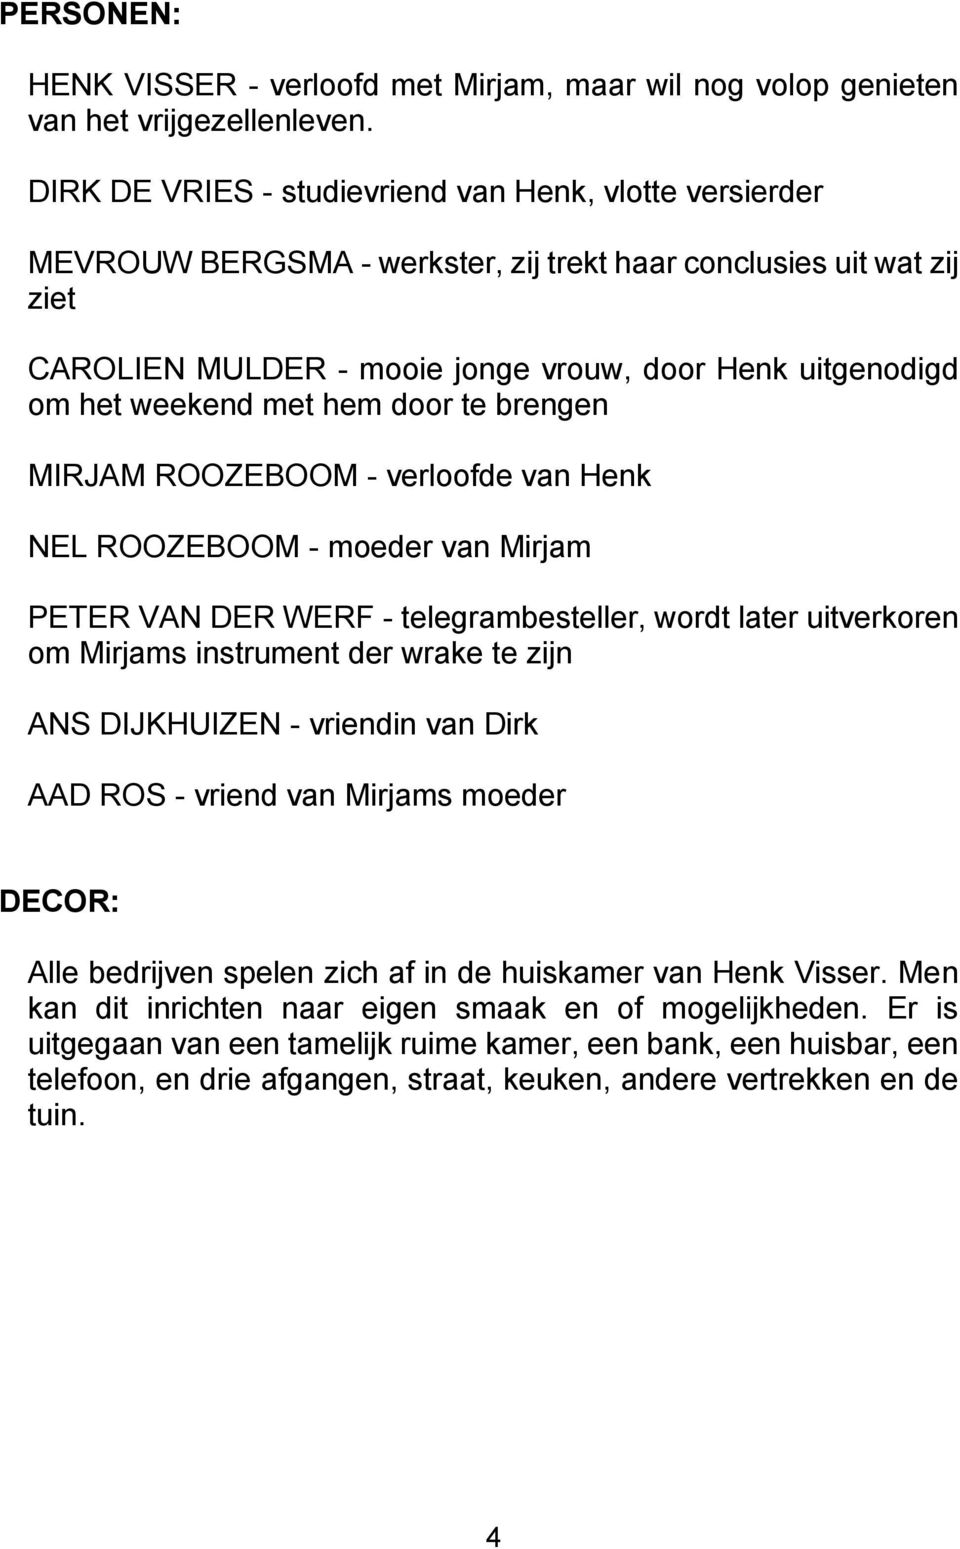 weekend met hem door te brengen MIRJAM ROOZEBOOM - verloofde van Henk NEL ROOZEBOOM - moeder van Mirjam PETER VAN DER WERF - telegrambesteller, wordt later uitverkoren om Mirjams instrument der wrake